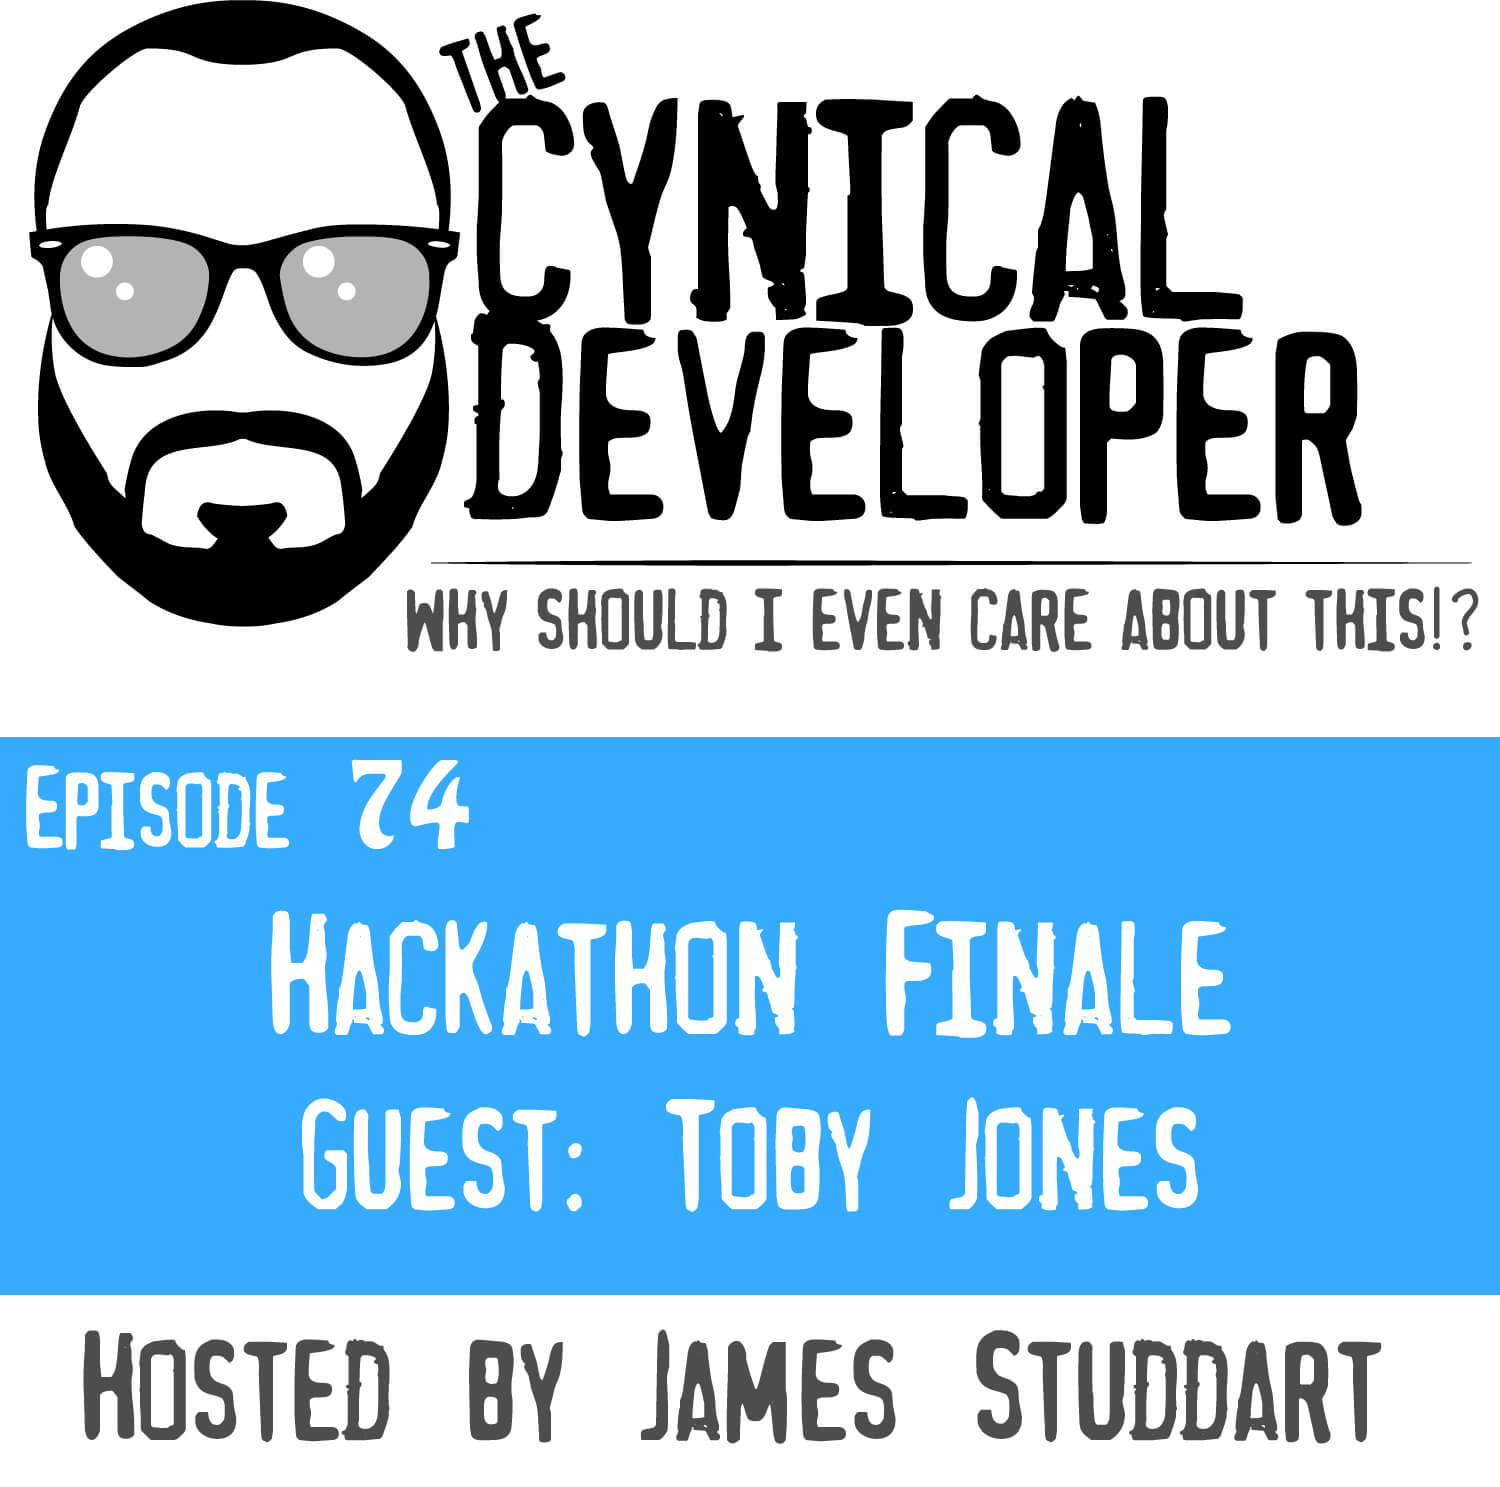 Episode 74 - Hackathon Finale